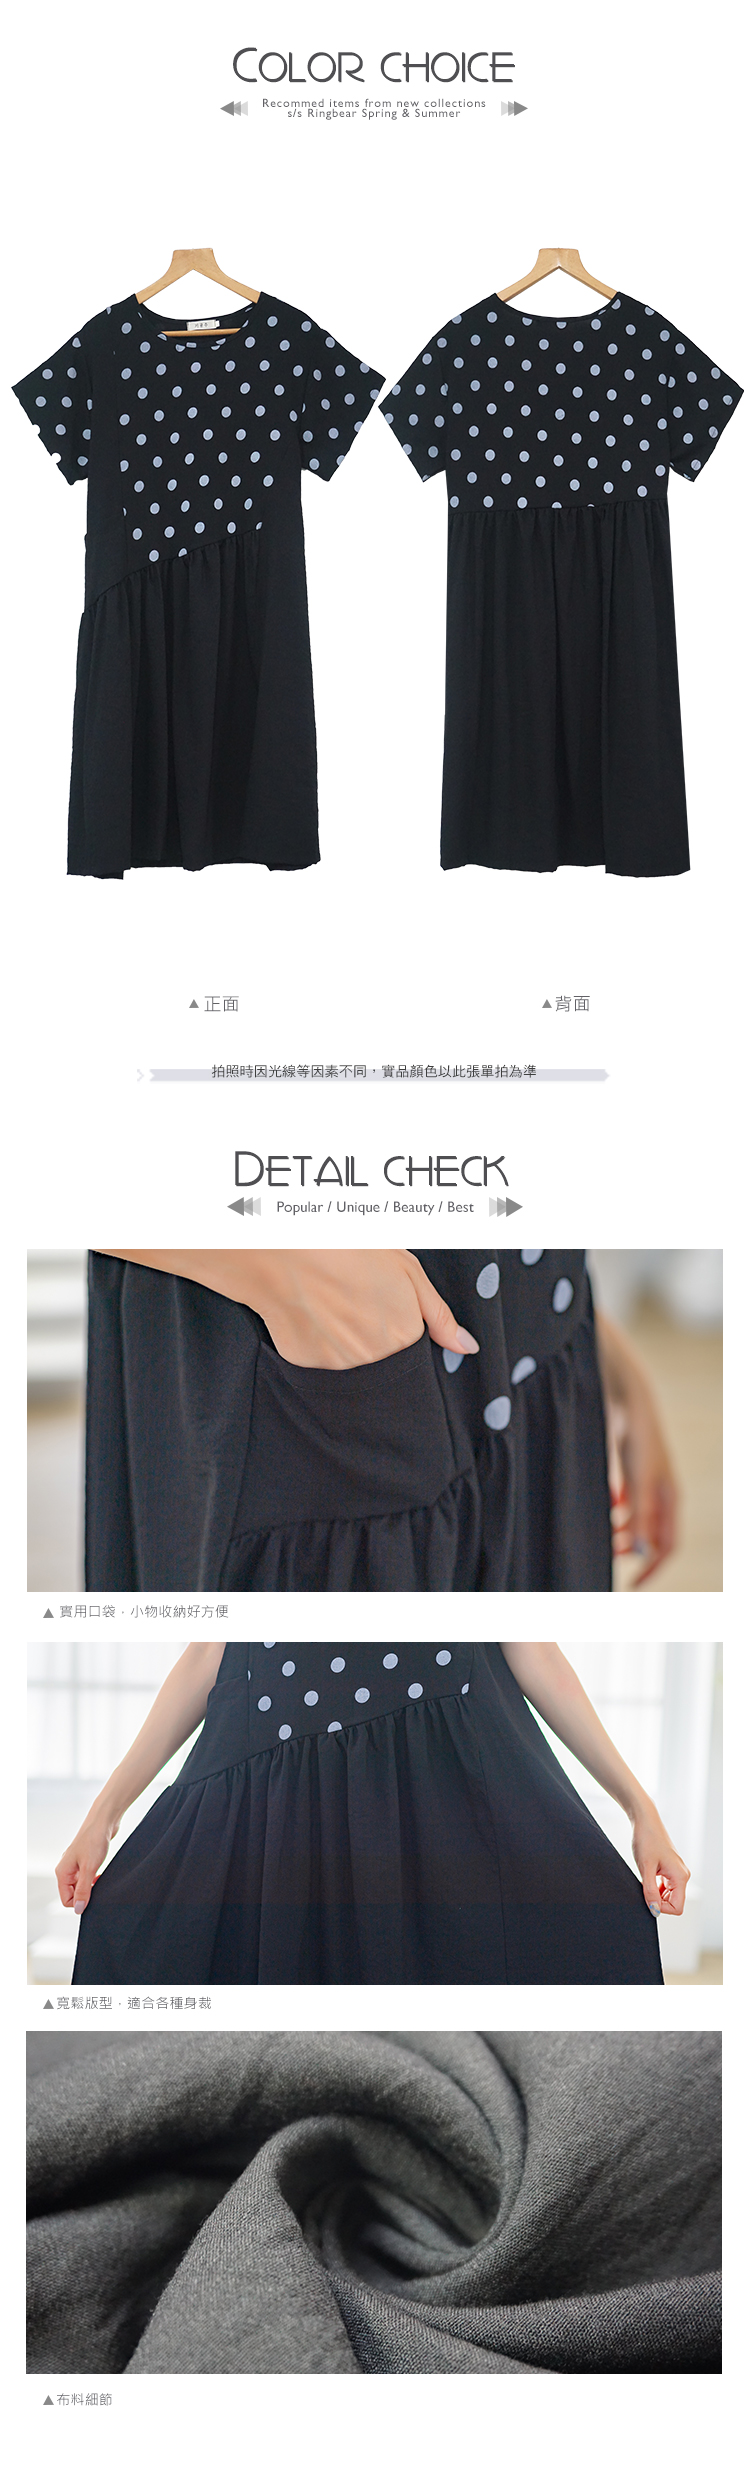 洋裝--休閒簡約圓點素面壓皺拼接寬鬆短袖圓領連身裙(黑XL-4L)-D546眼圈熊中大尺碼